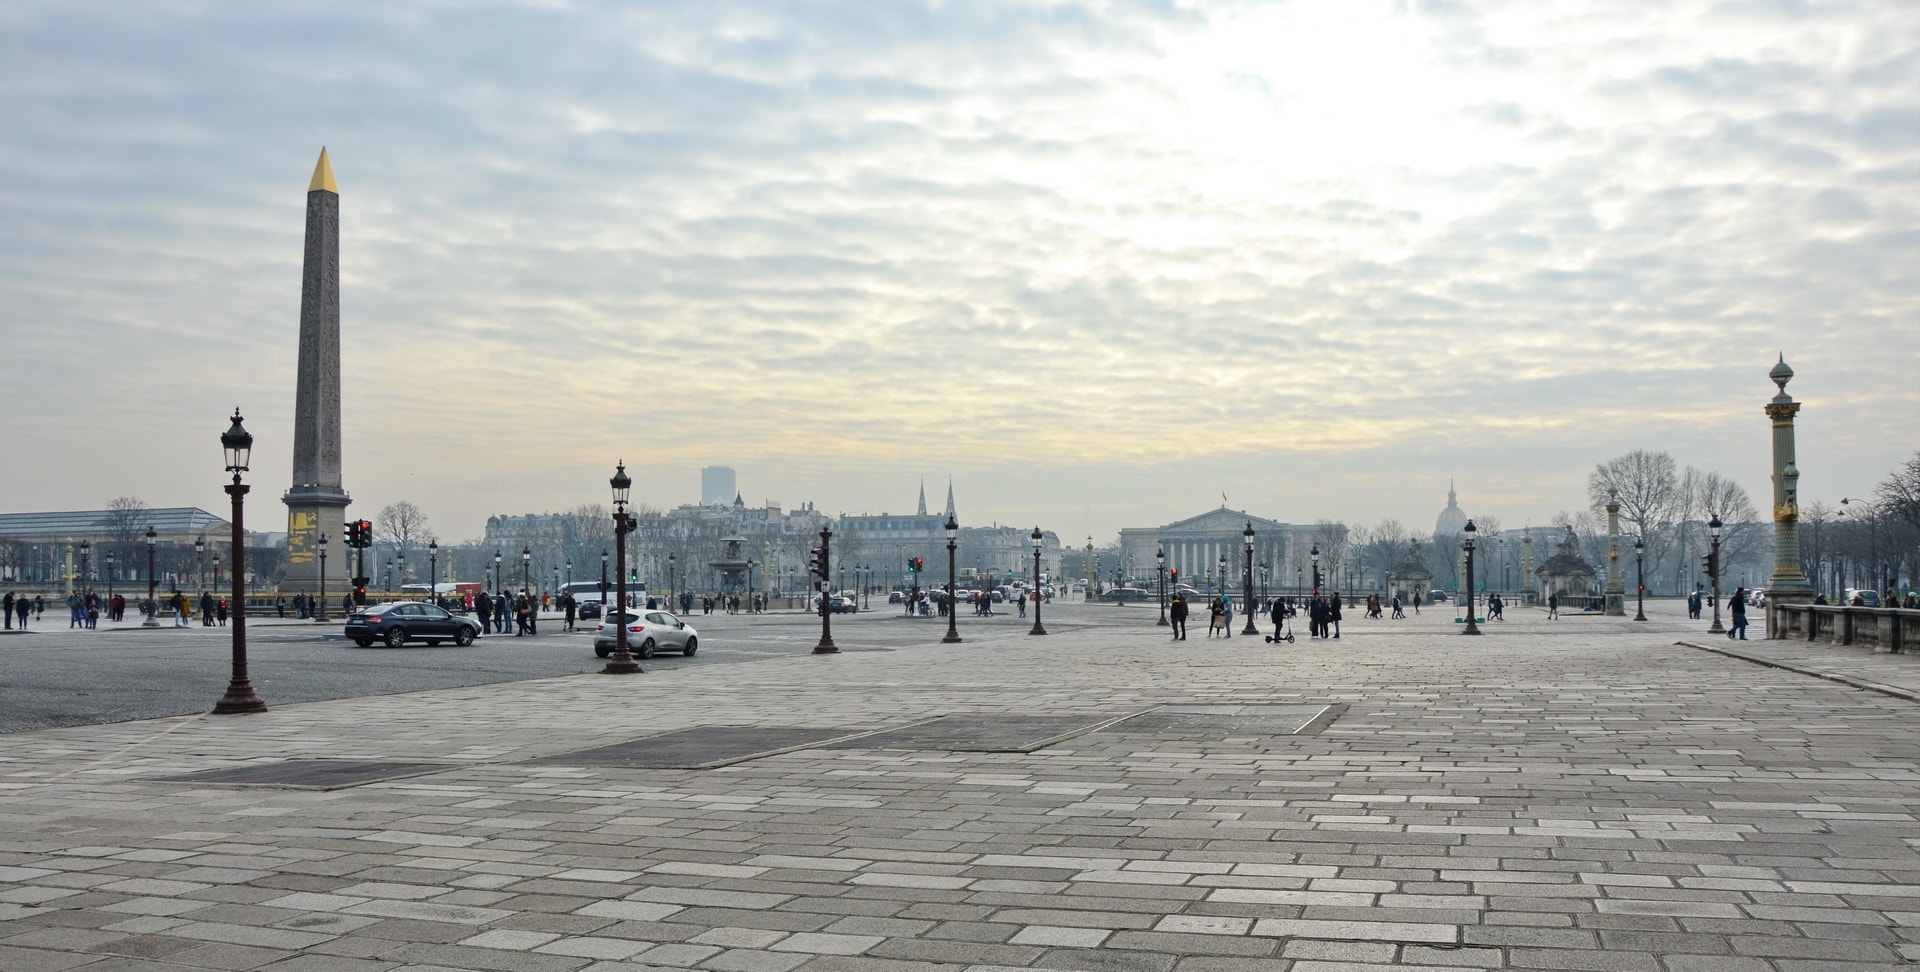 Place de la Concorde square